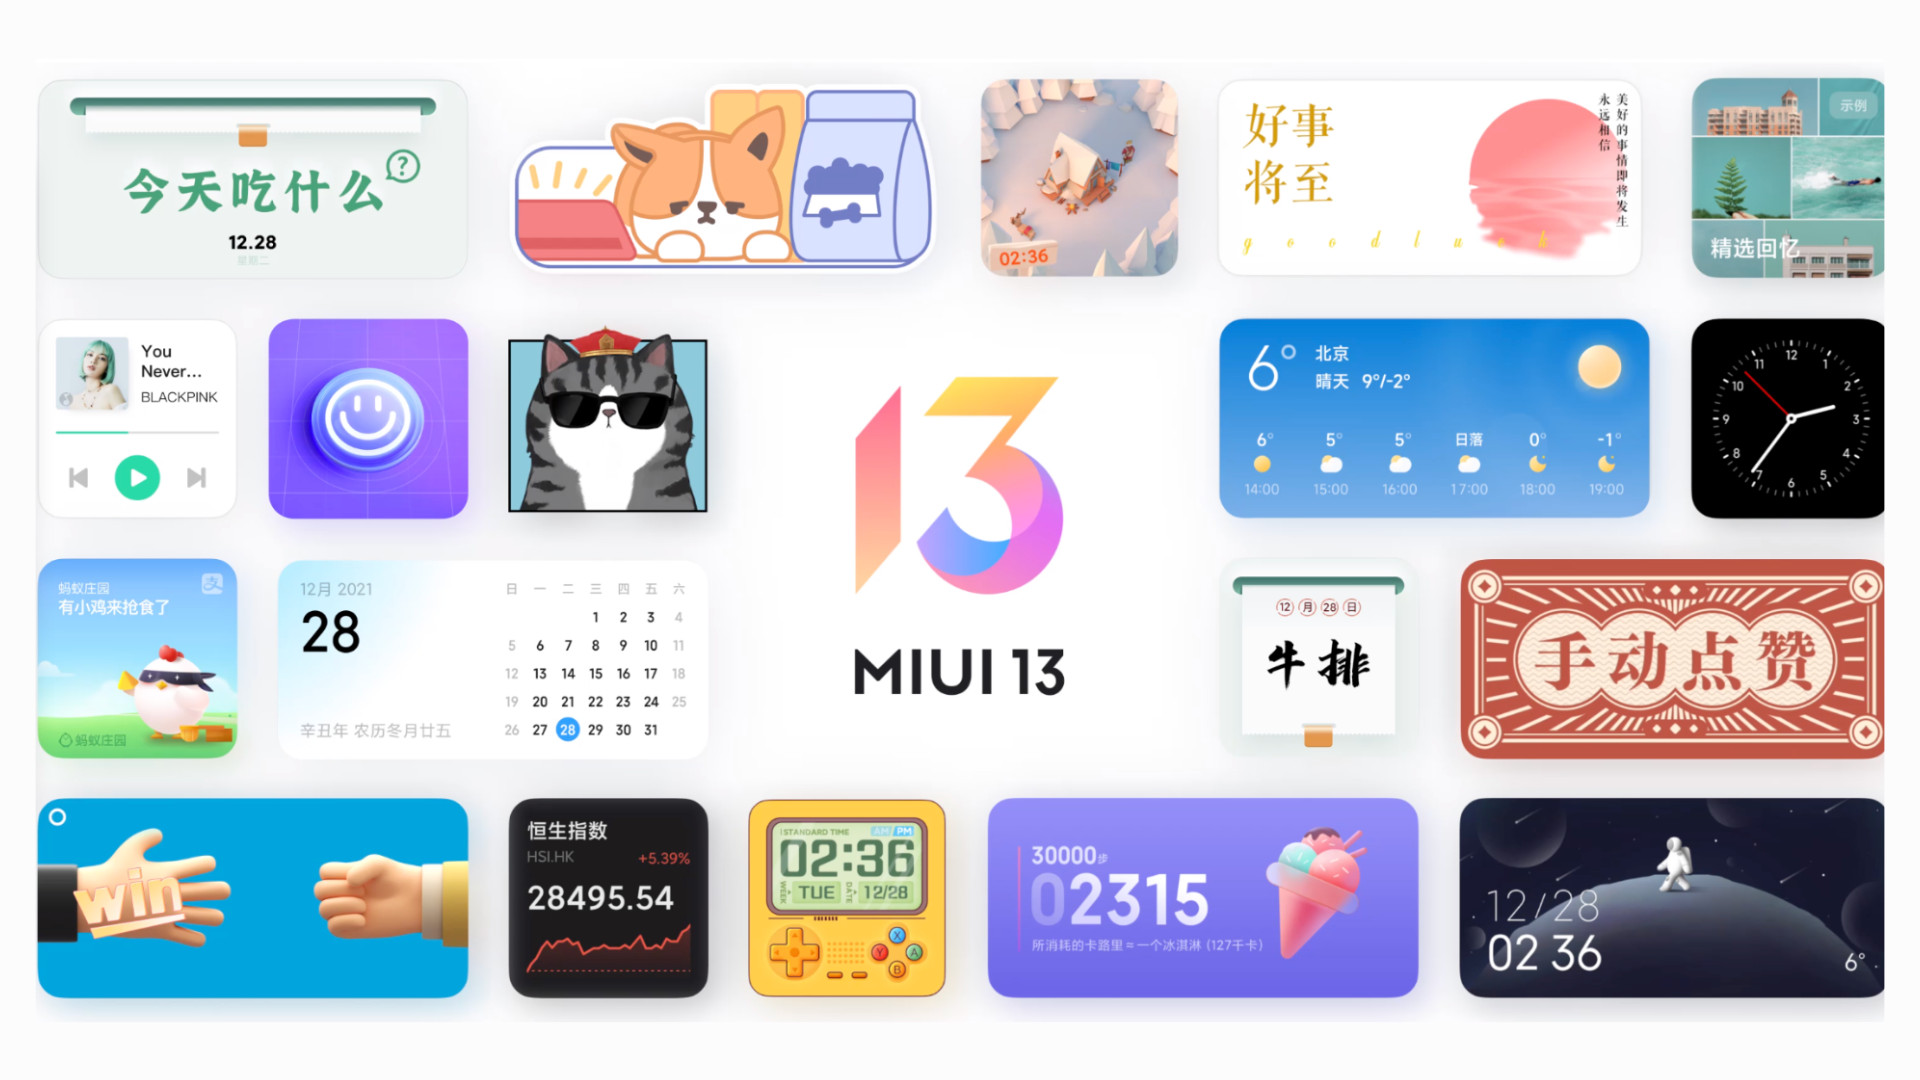 Xiaomi додала в MIUI режим Pure Mode - що це означає